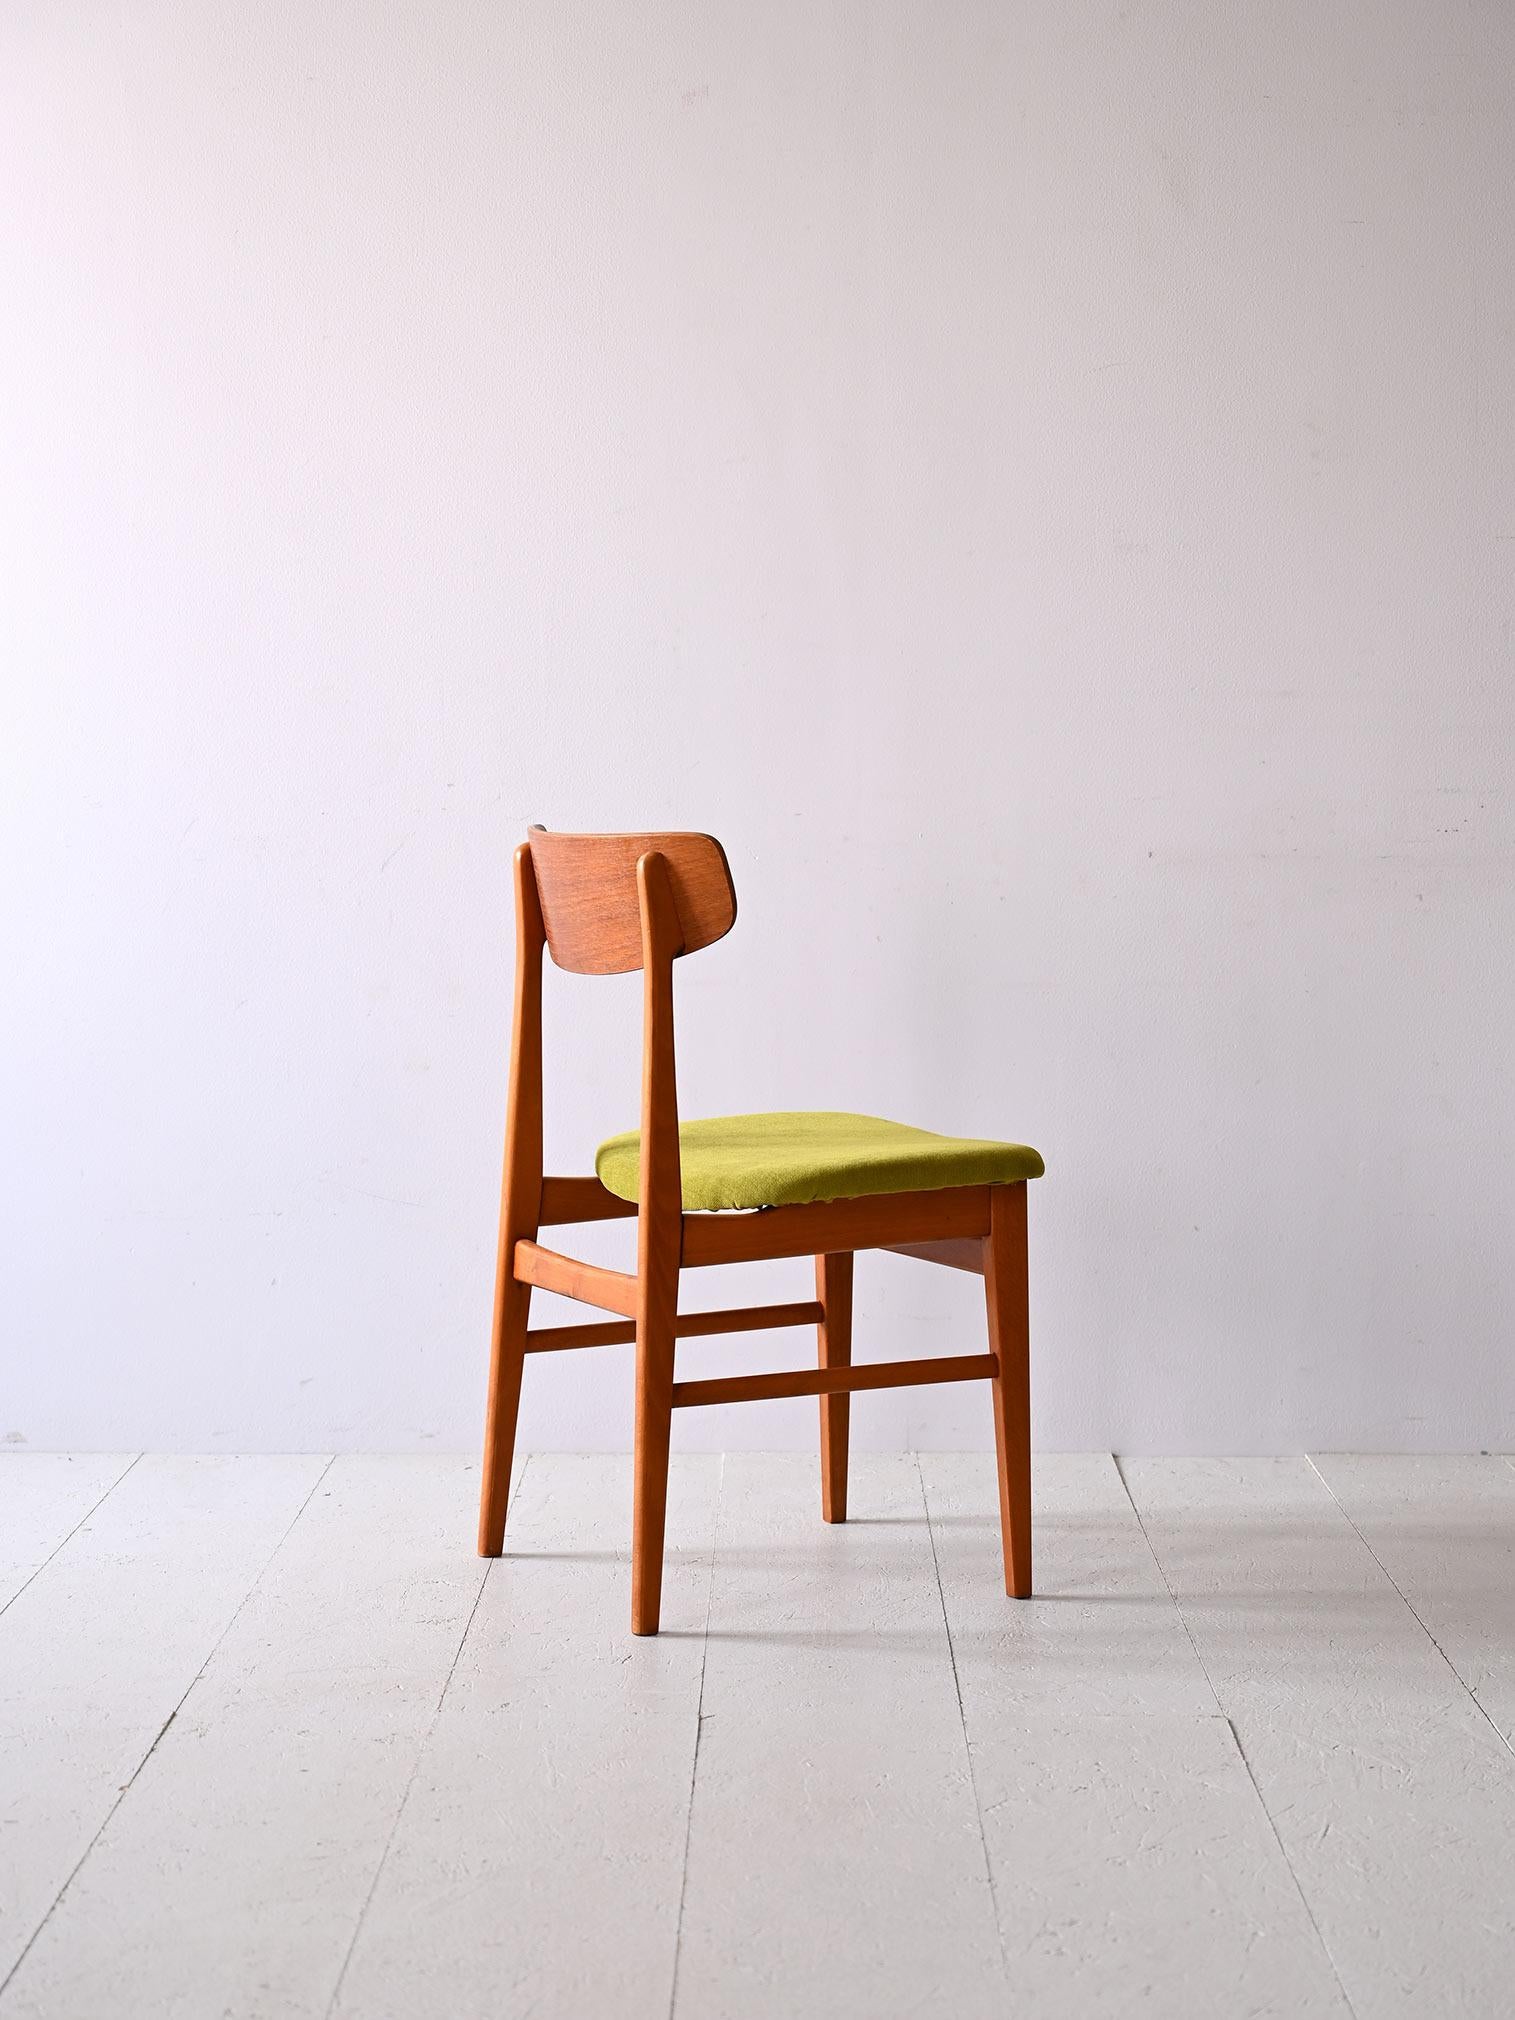 Scandinavian Modern Danish teak wood chair reupholstered